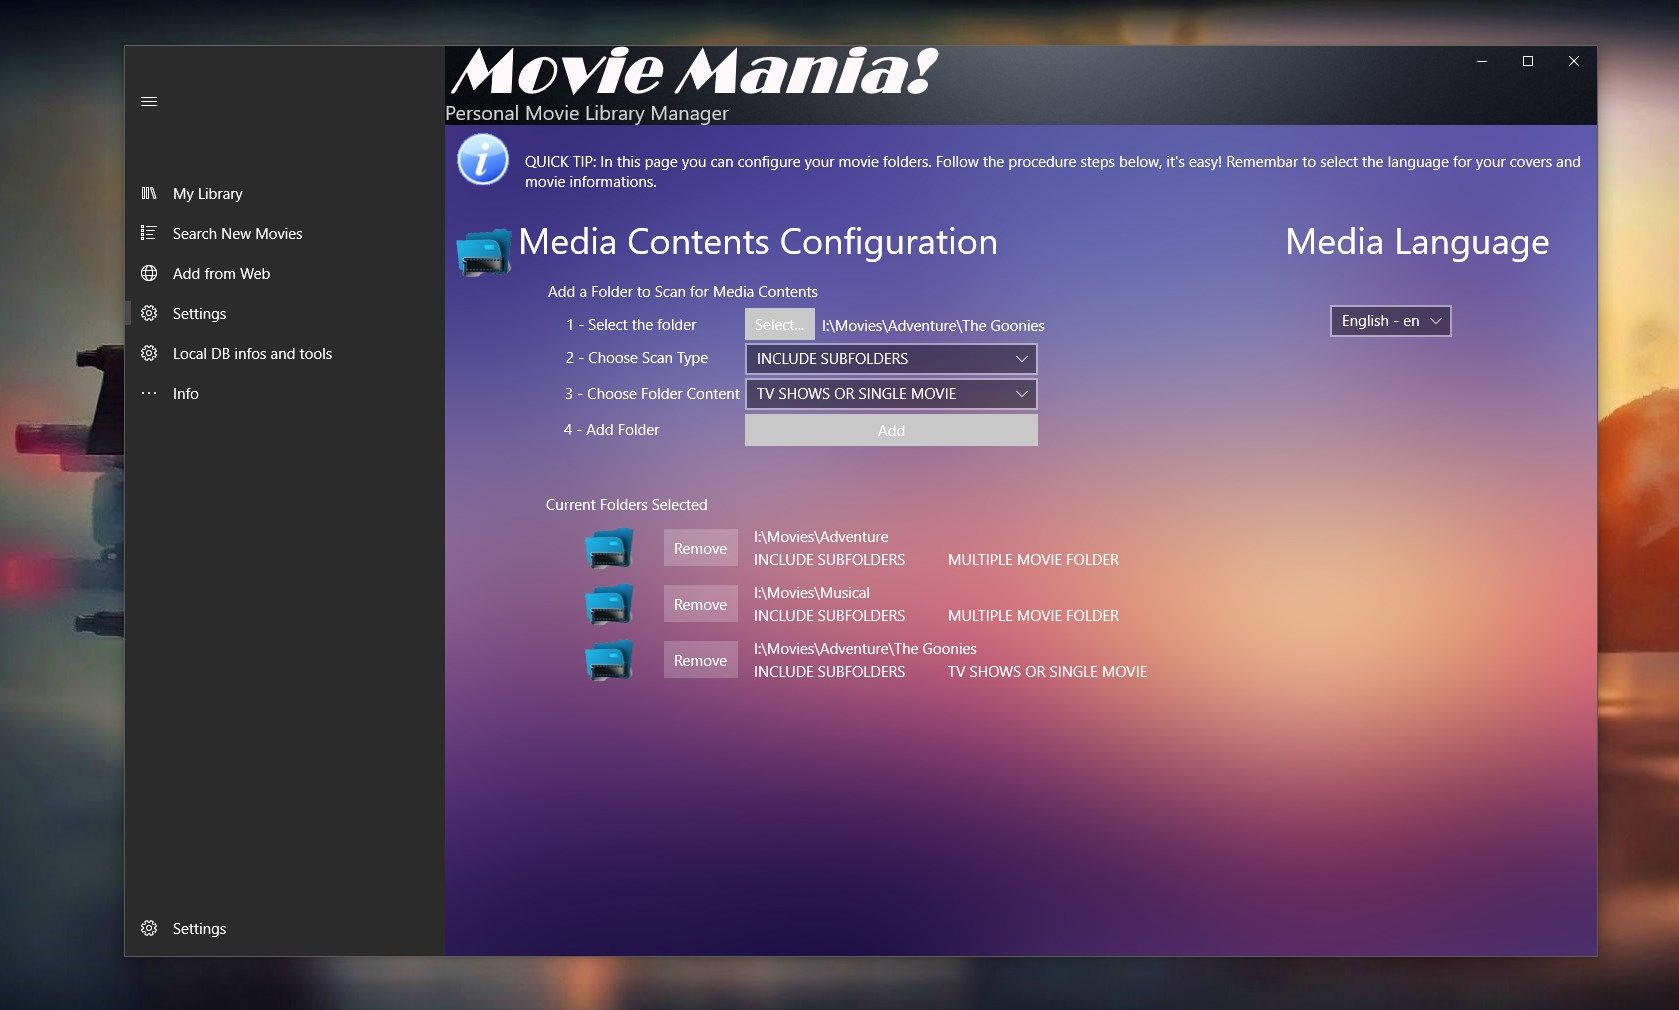 Configure your movie folders...